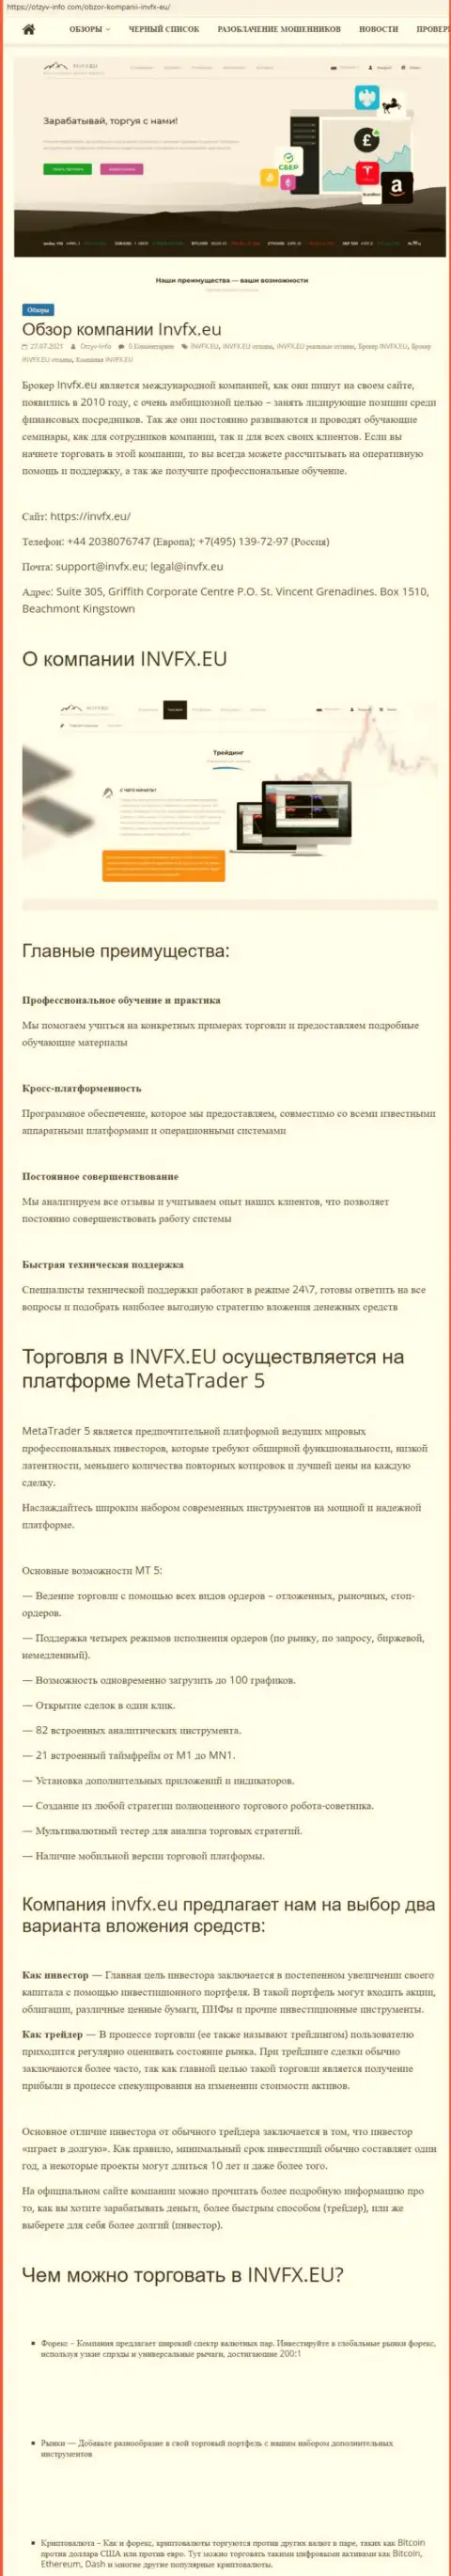 Информационный сервис Otzyv Info Com опубликовал статью о Форекс-дилинговой компании INVFX